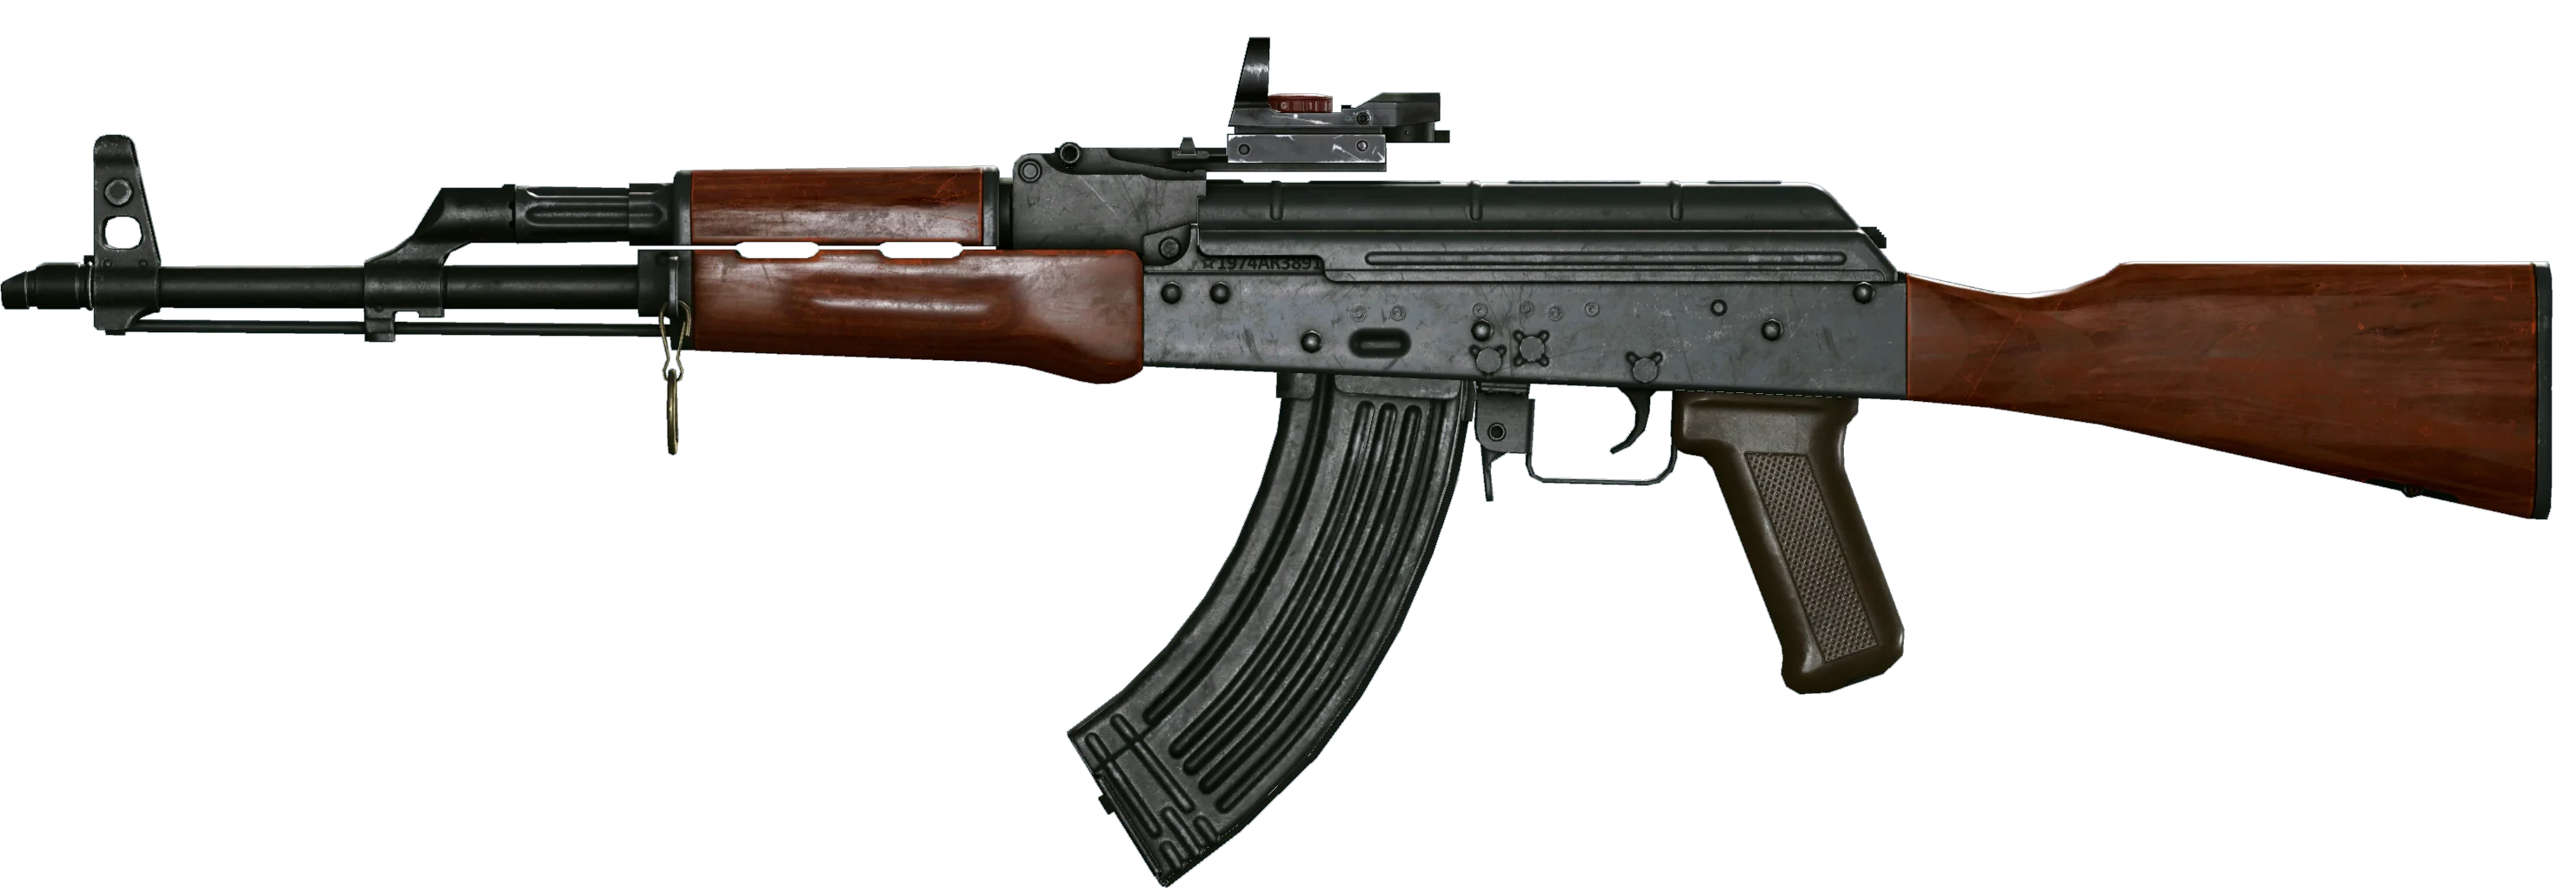 AK в Warface — почему так популярен и как его получить - фото 3